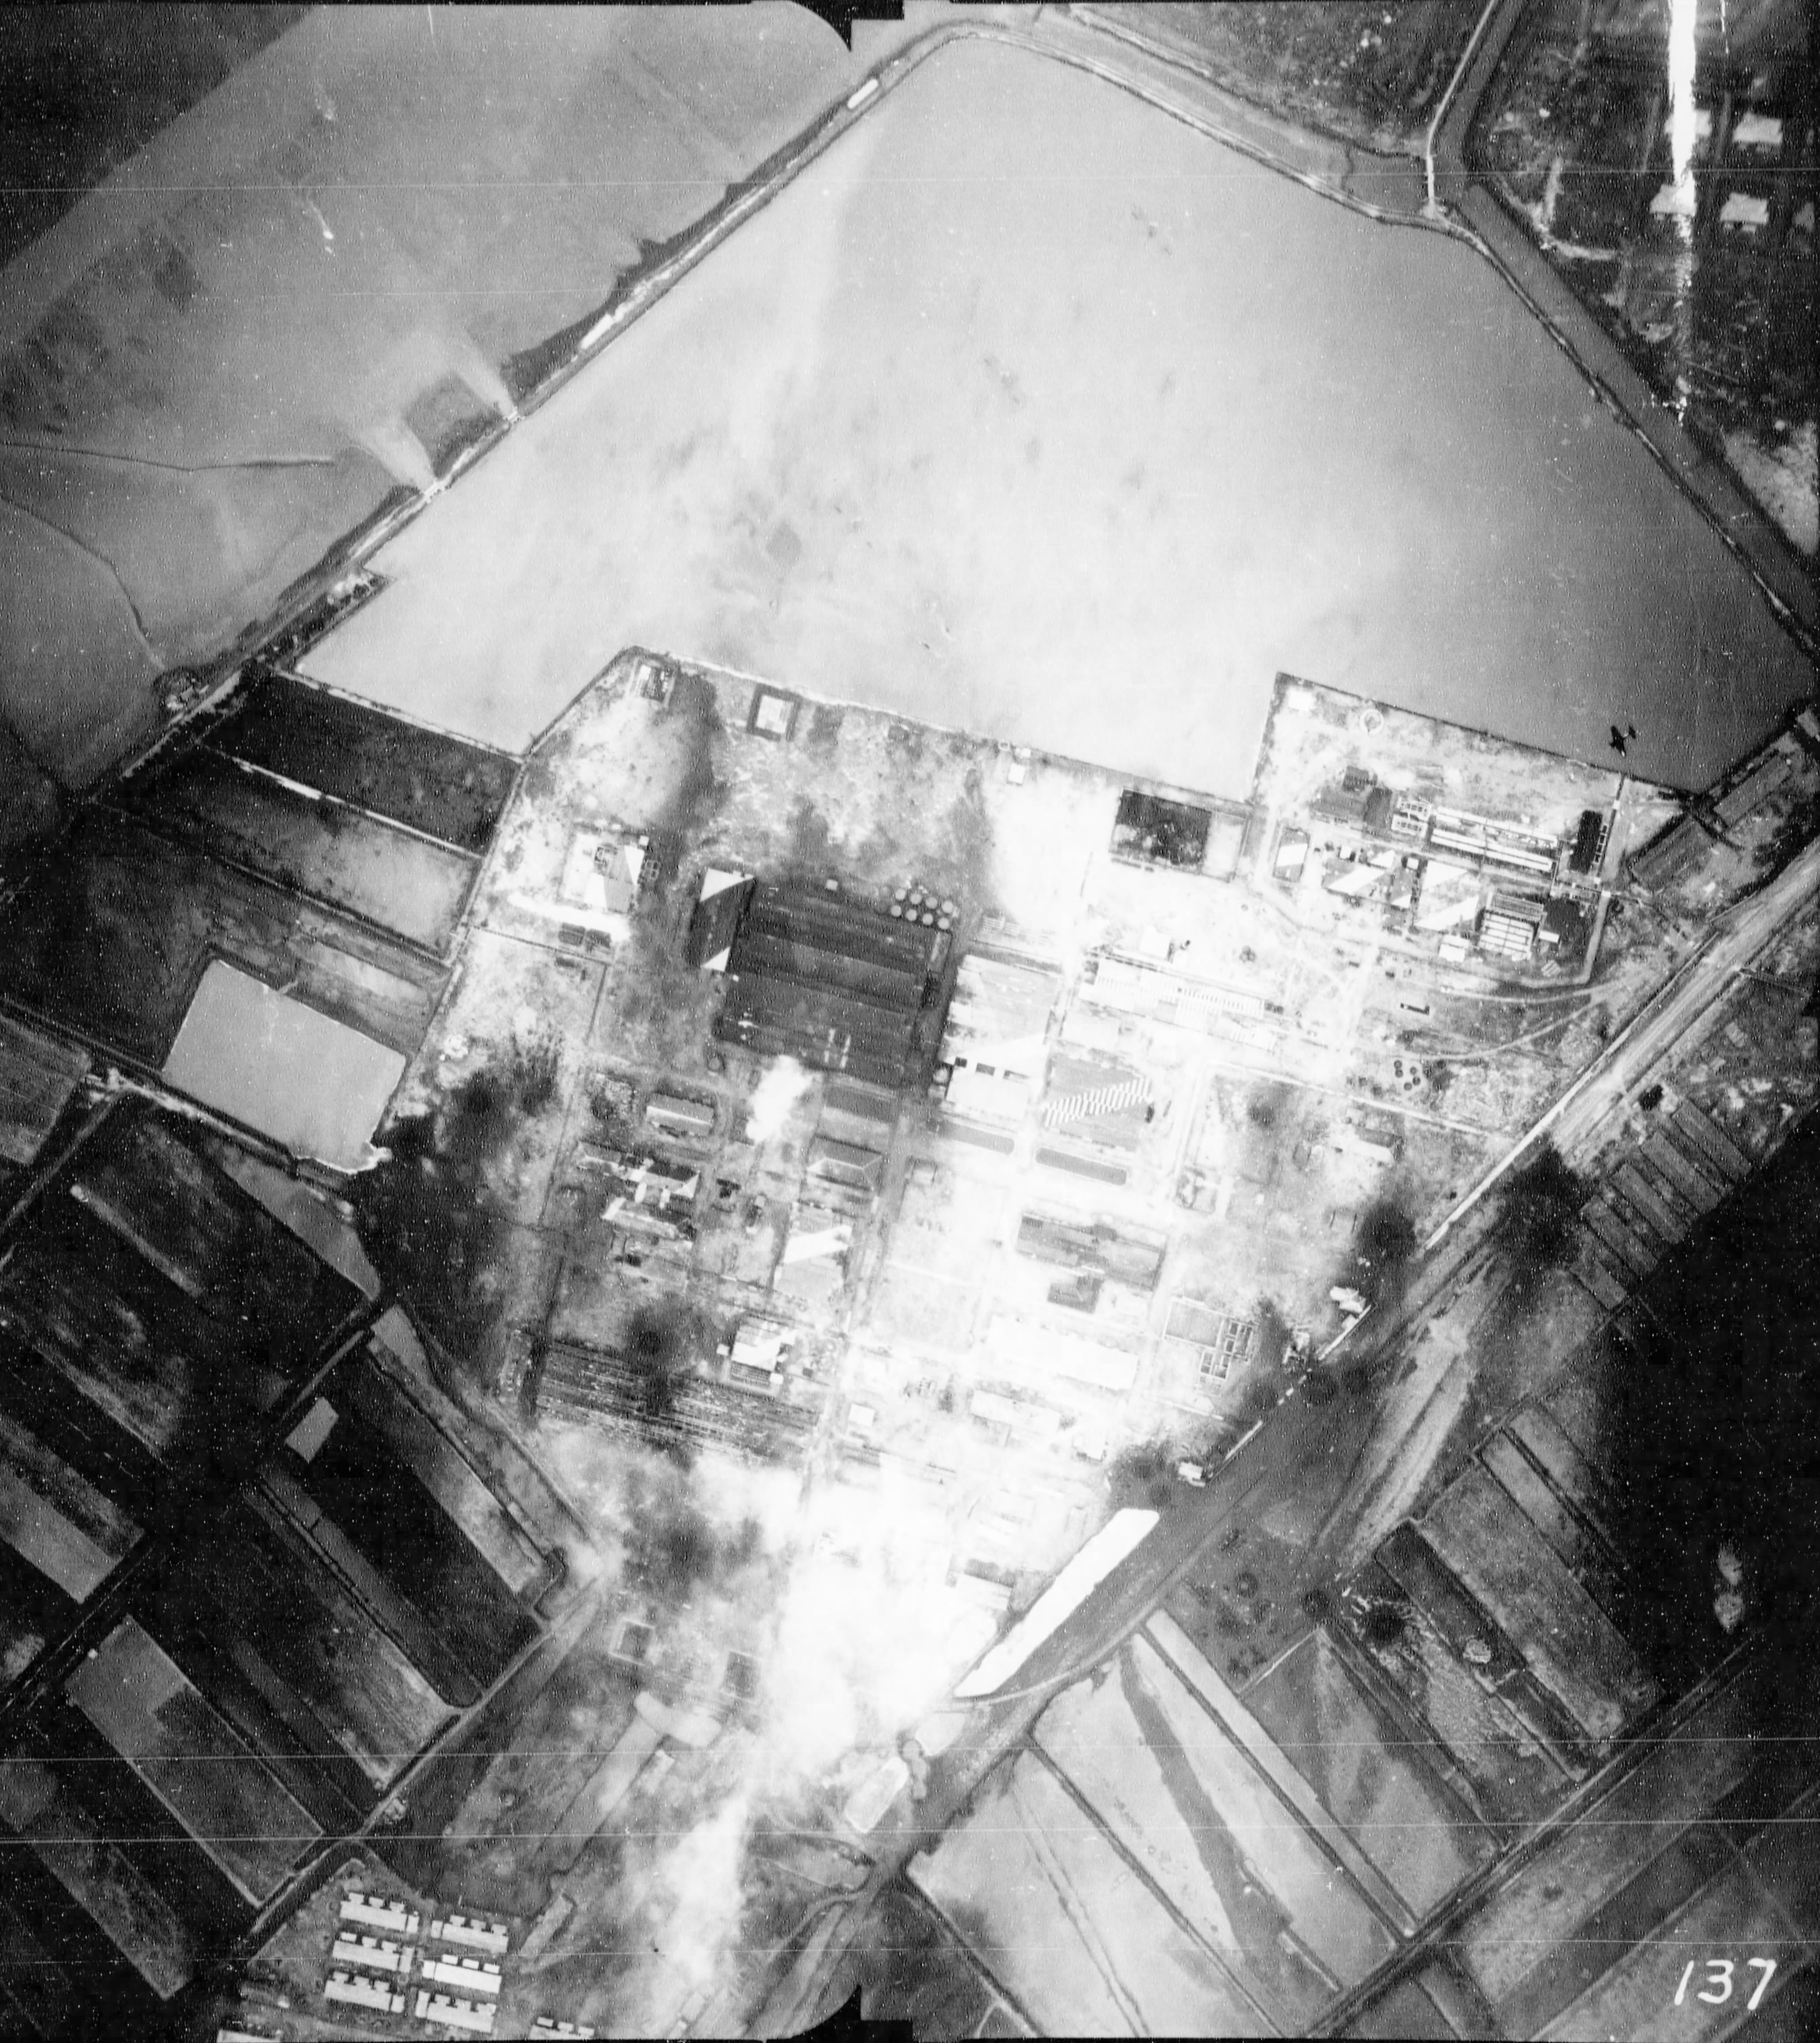 Kaneka Soda Company chemical plant under attack by Air Group 80 aircraft from USS Ticonderoga, Tainan, Taiwan, 15 Jan 1945, photo 1 of 2